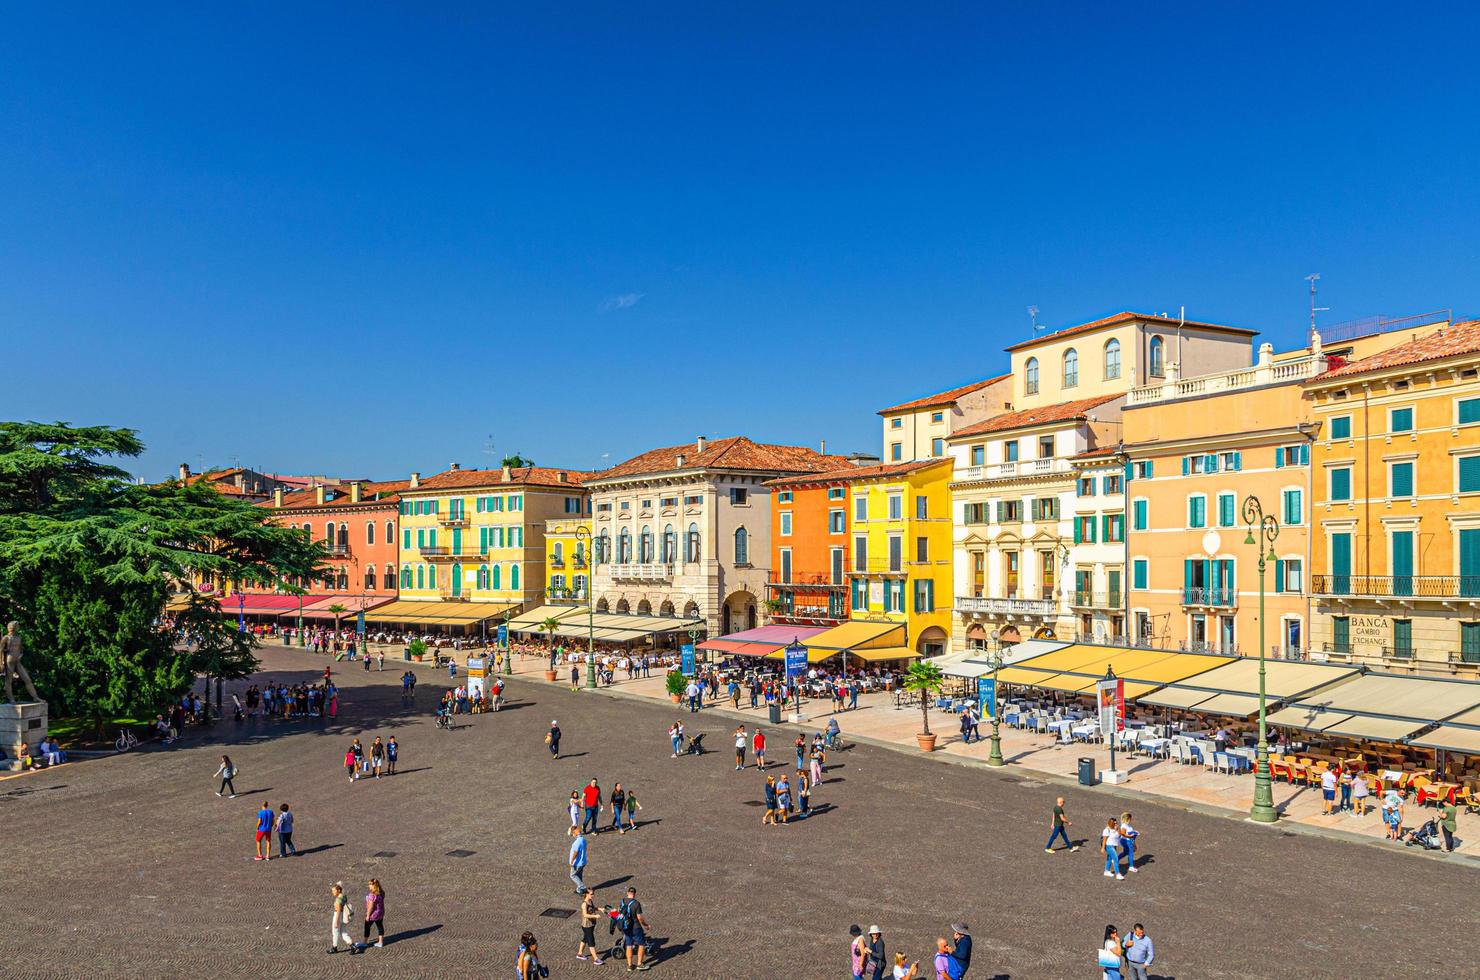 verona, italia, 12 de septiembre de 2019 vista aérea de la plaza piazza bra en el centro histórico de la ciudad con una fila de viejos edificios coloridos multicolores foto